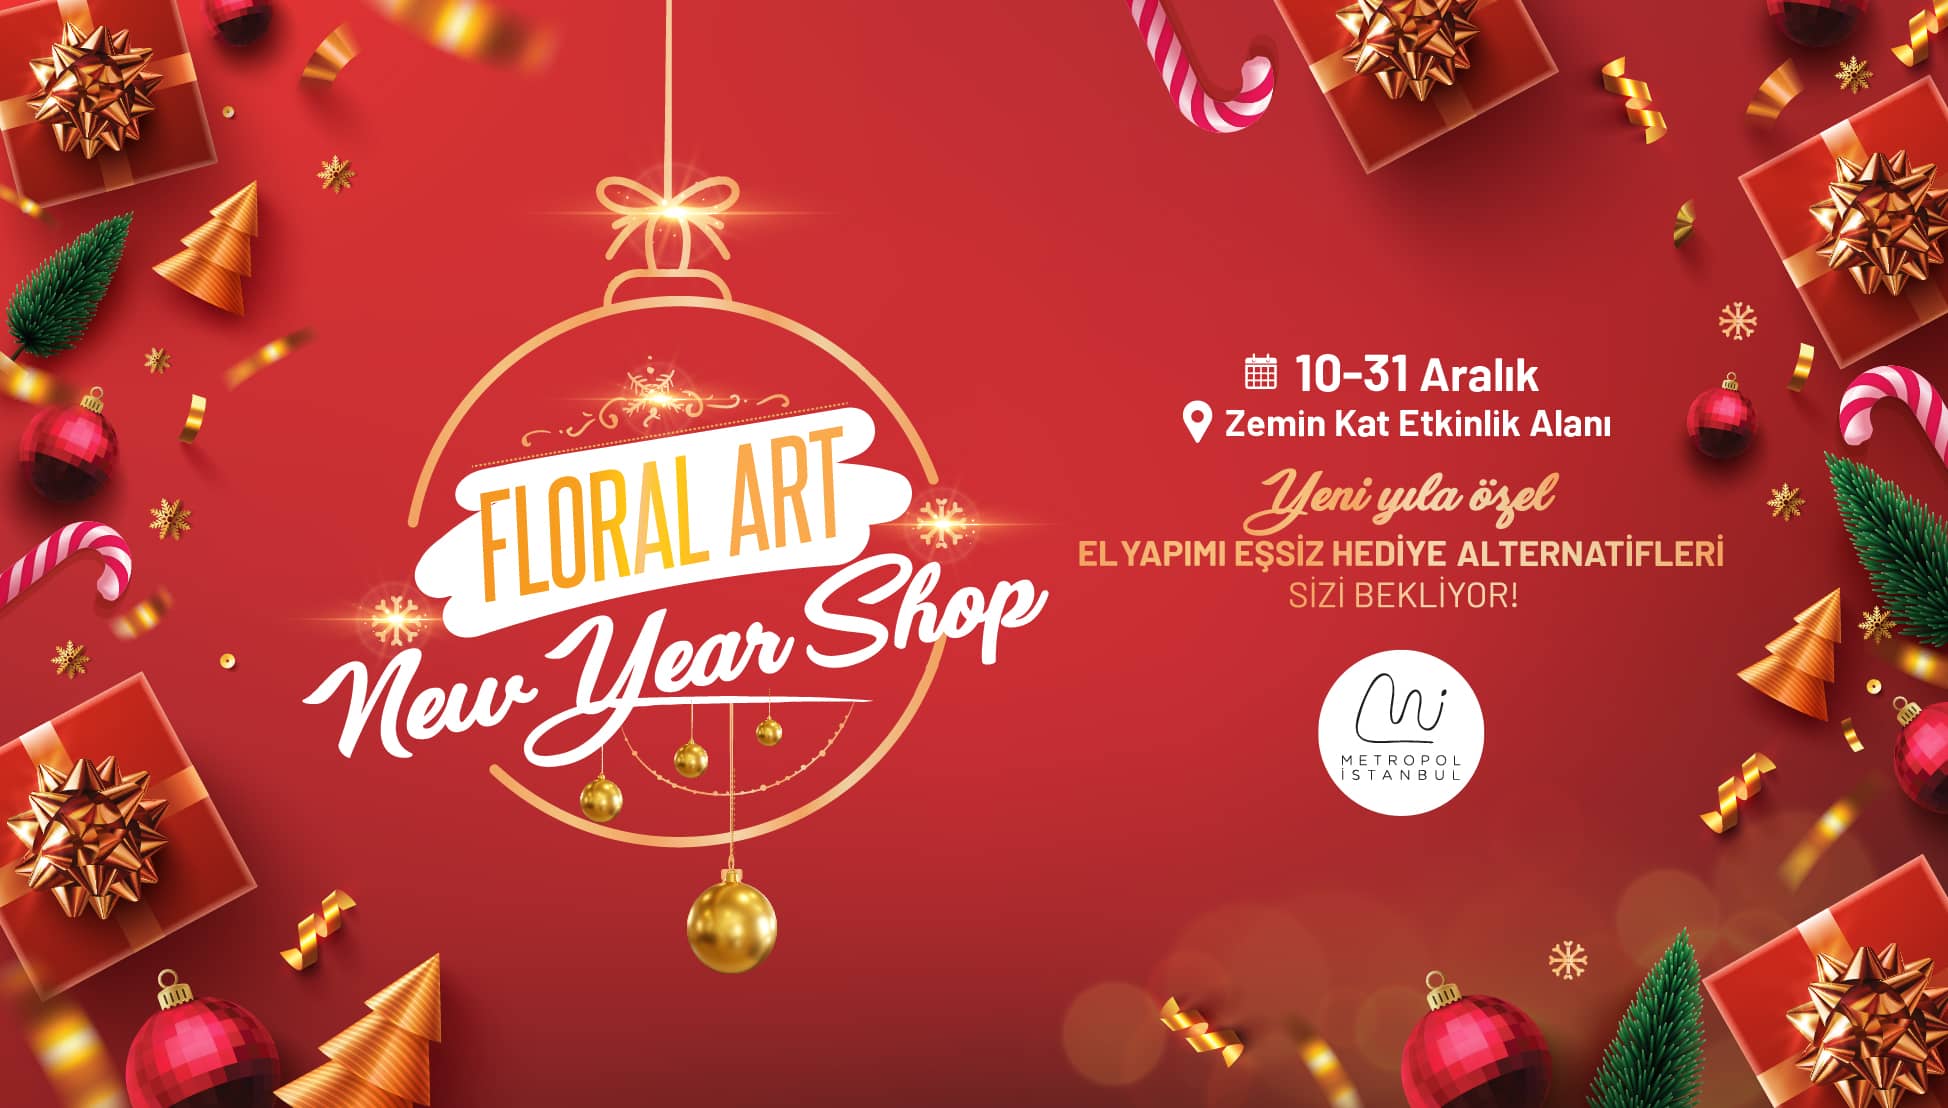 Yeni yıl hediye alternatifleri Metropol İstanbul Floral Art New Year Shop’ta Sizleri Bekliyor!